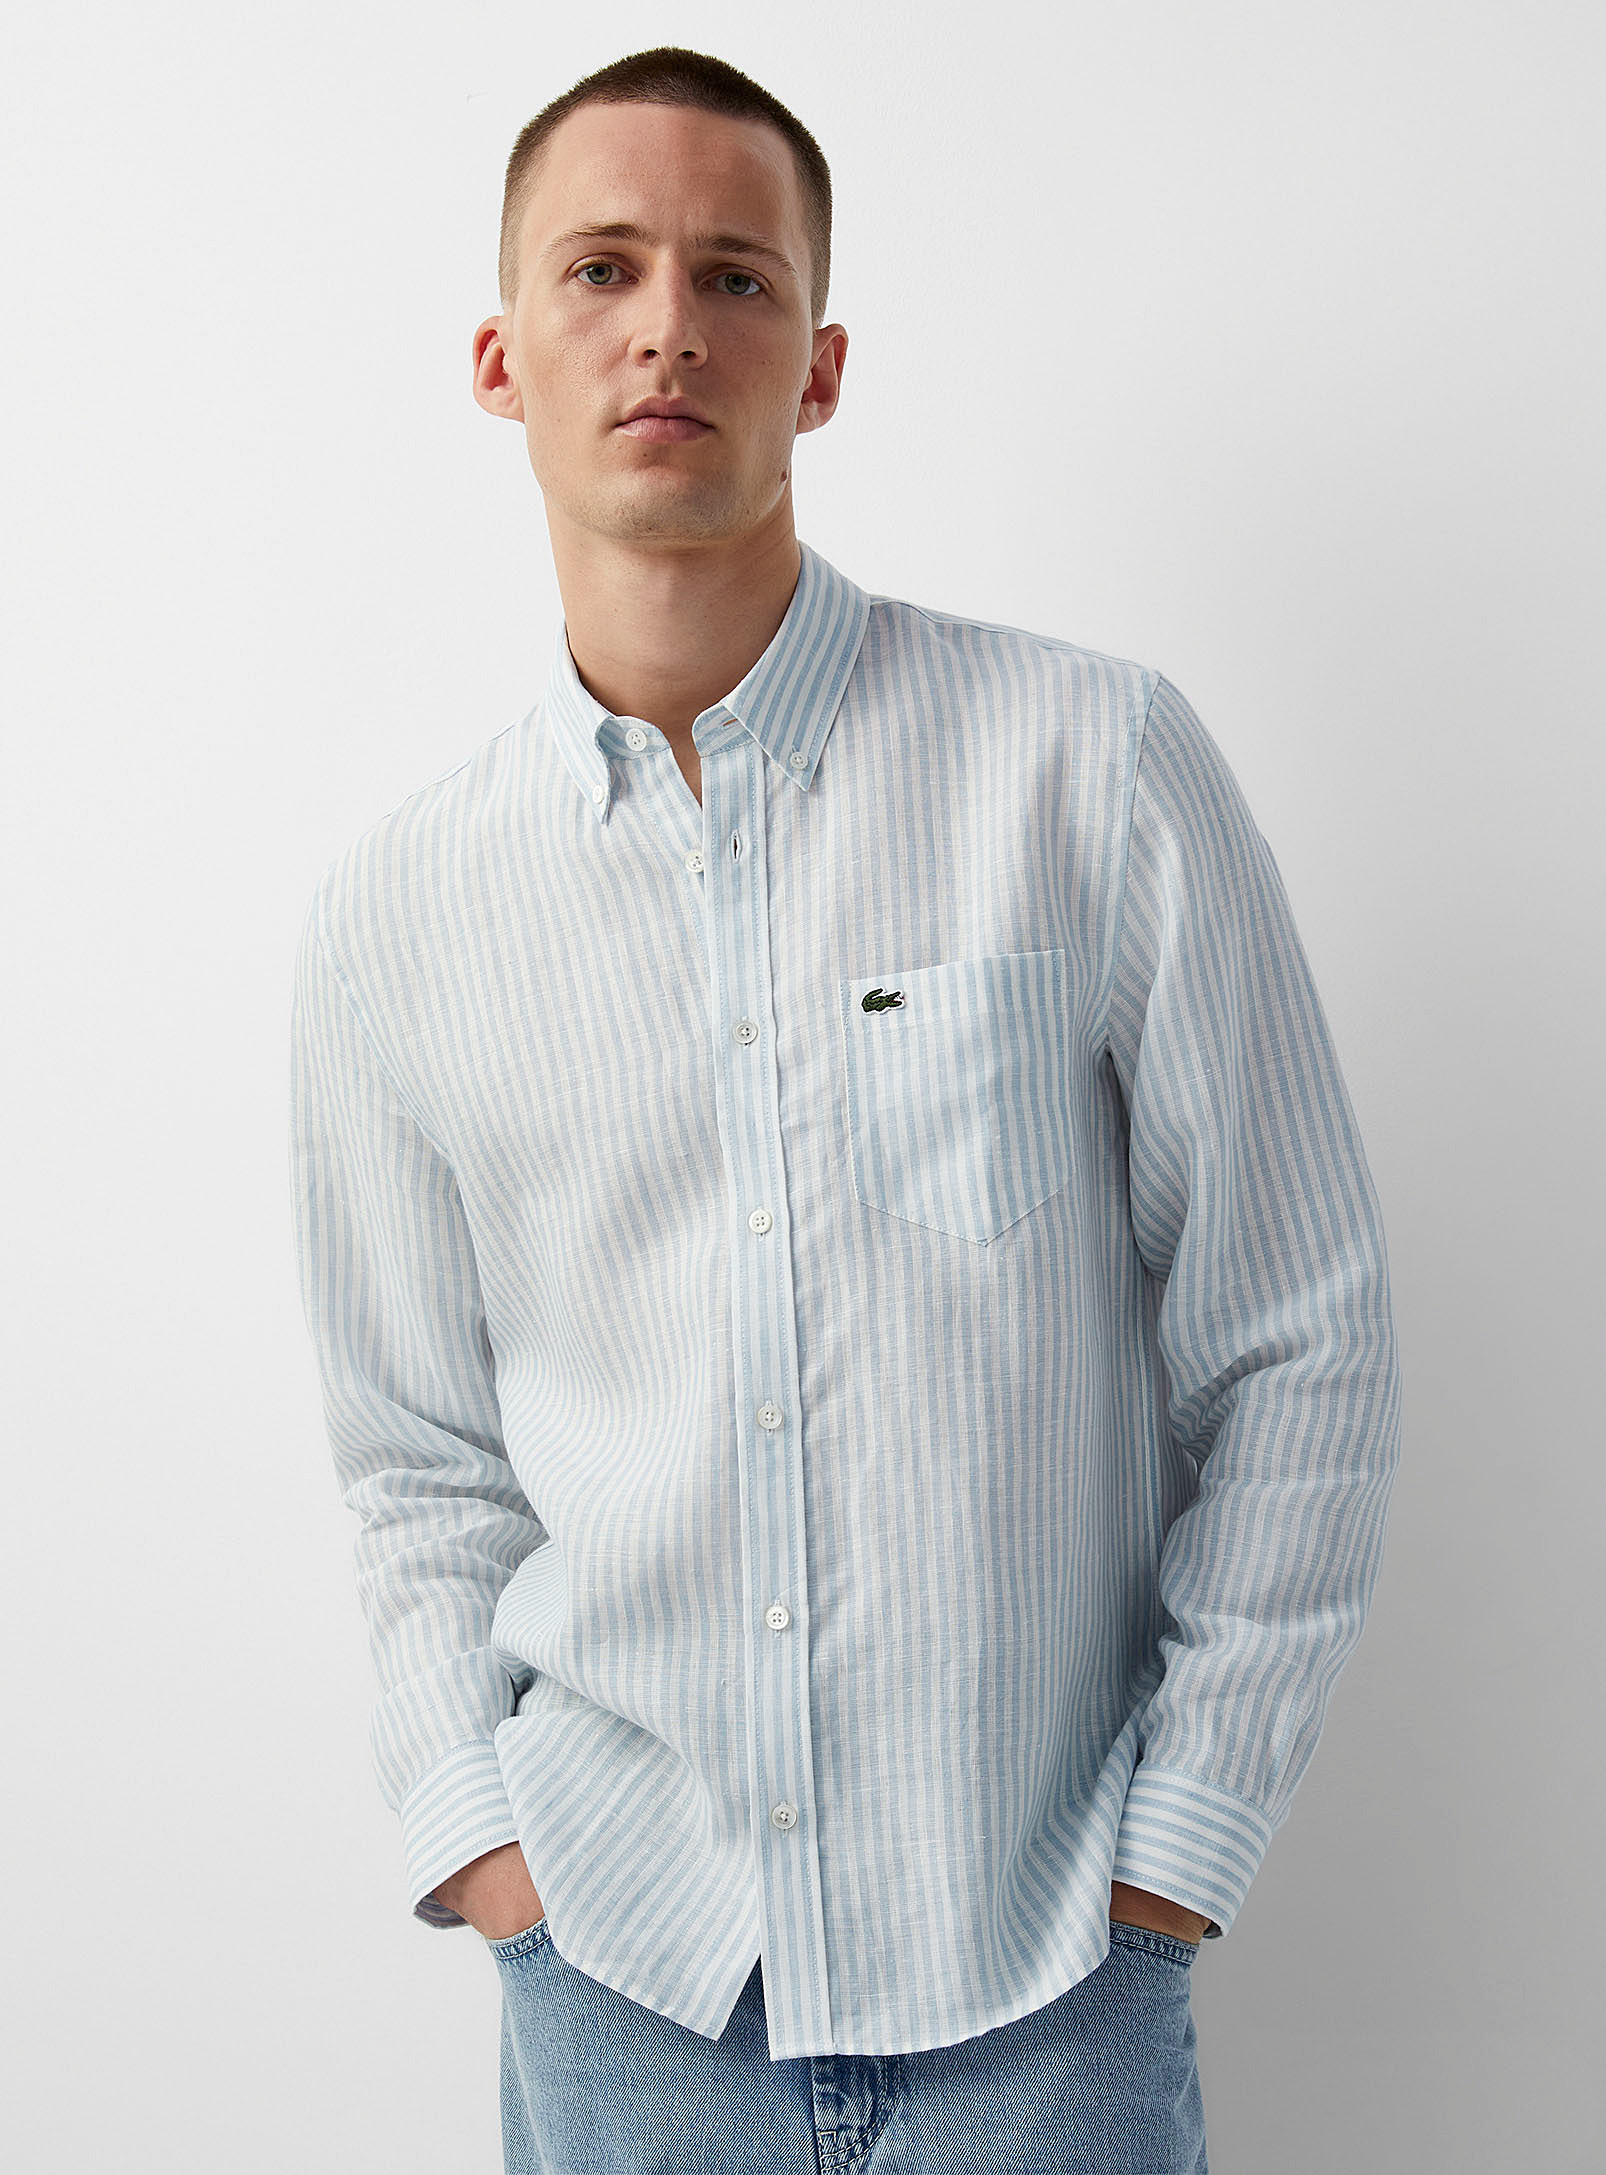 Lacoste - Men's Pure linen vertical stripe shirt